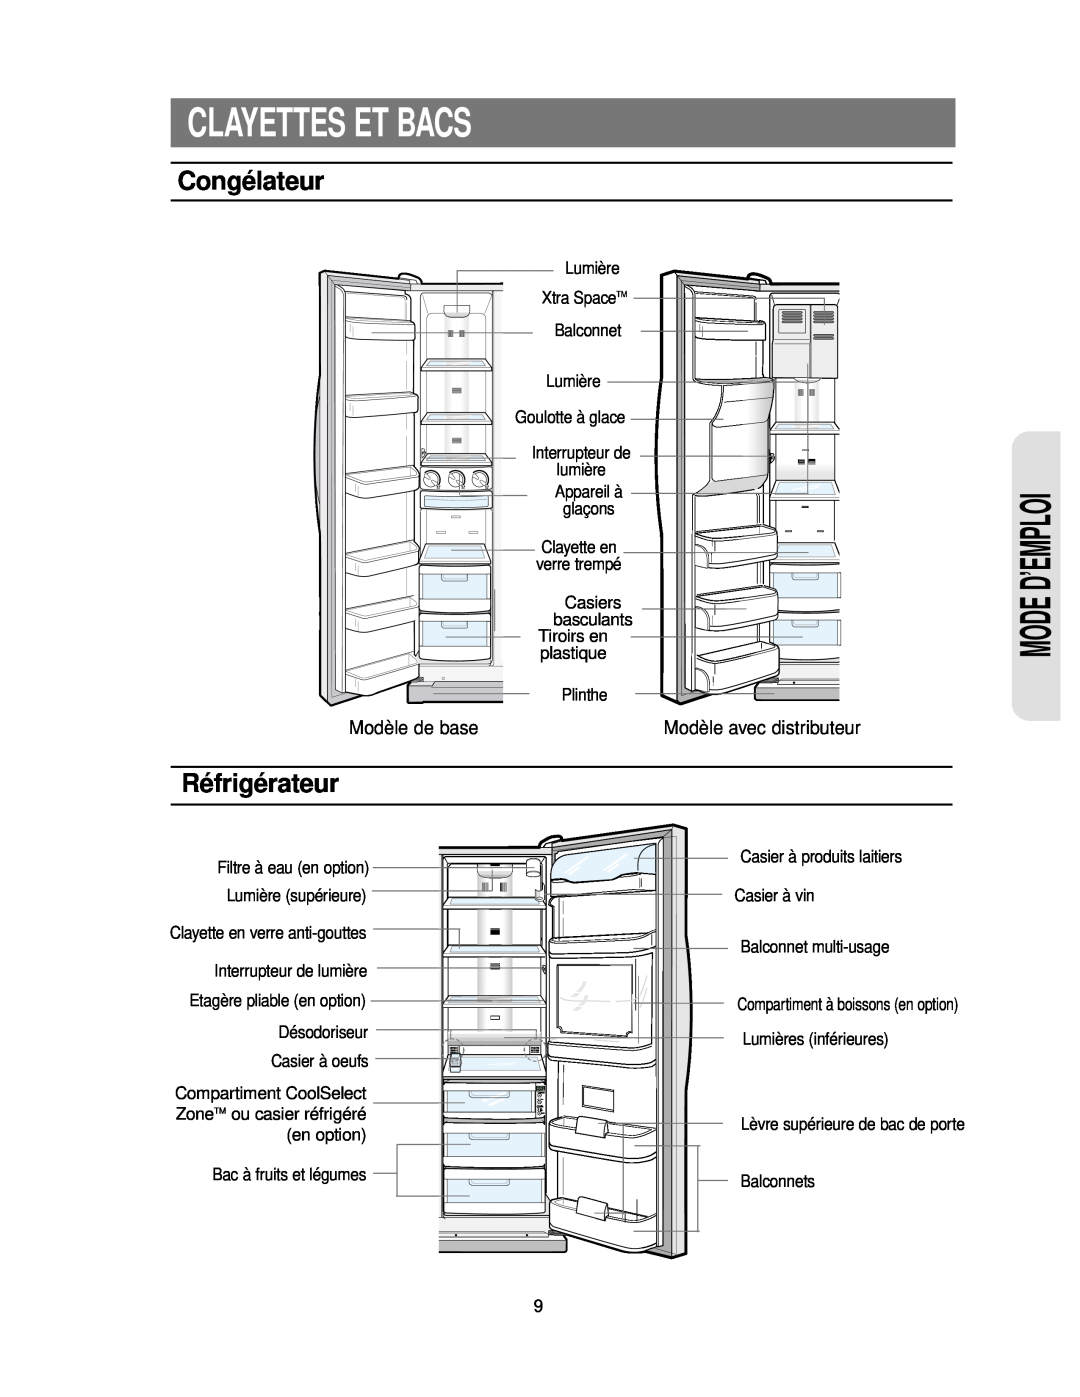 Samsung RS24KASW1/CAF manual Clayettes Et Bacs, Congélateur, Réfrigérateur, Modèle de base, Mode D’Emploi 